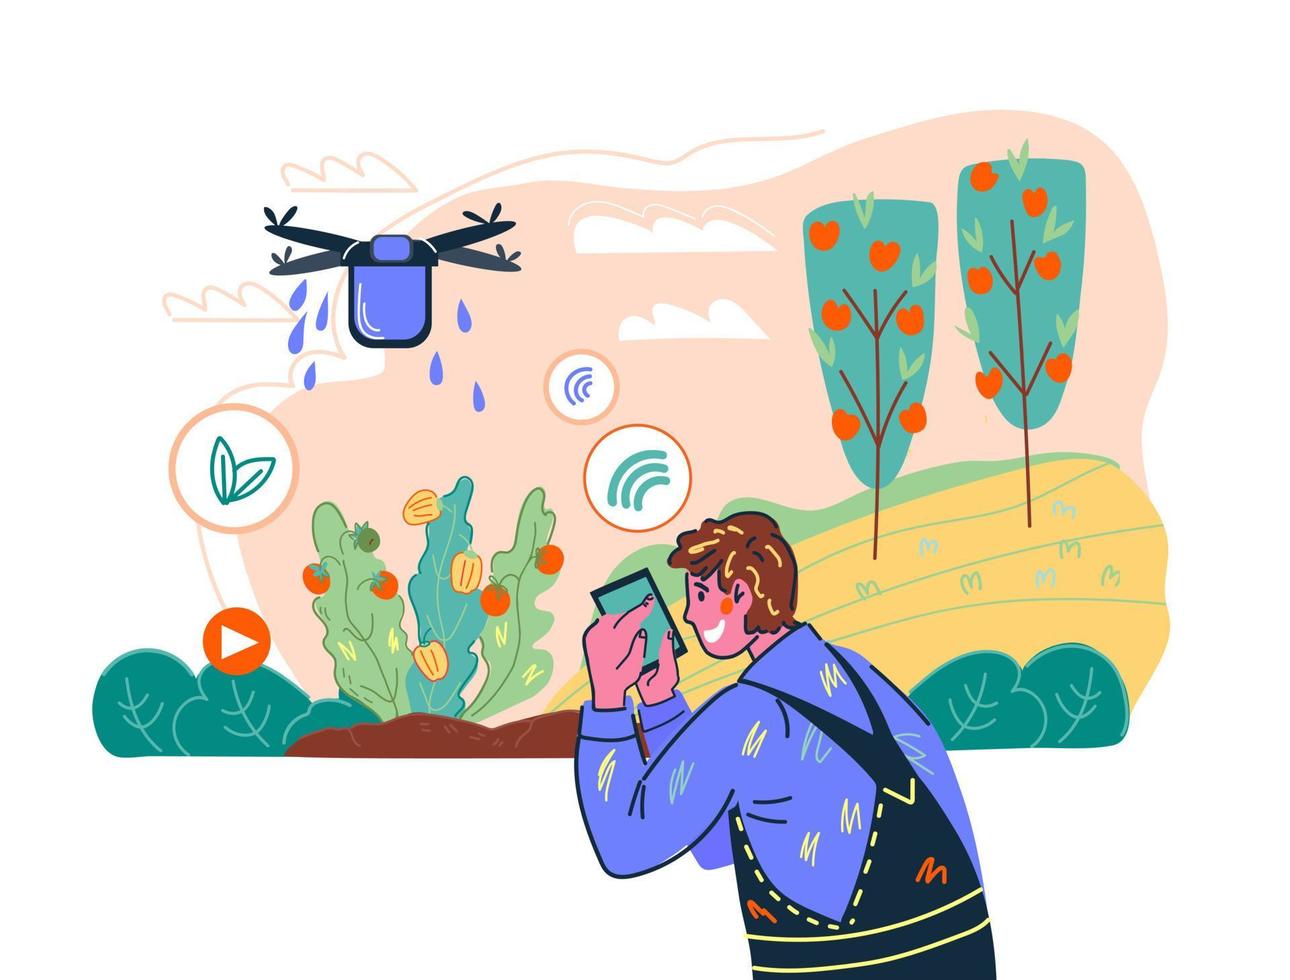 système agricole intelligent et technologie agricole sans fil avec un agriculteur contrôlant à distance un drone. innovation industrielle à distance pour la production végétale. illustration de vecteur de dessin animé.